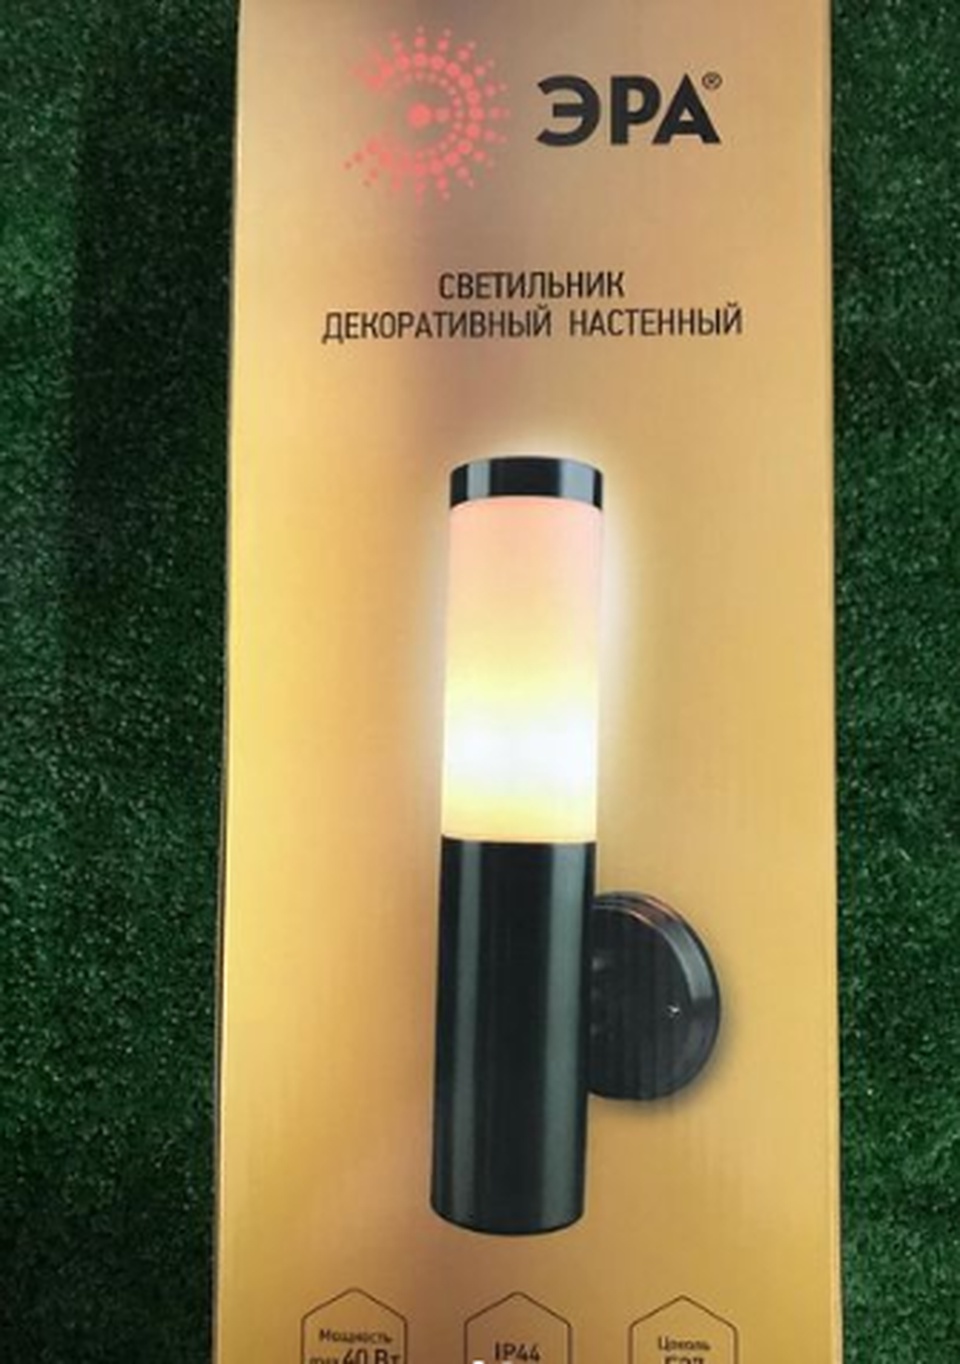 Настенный декоративный Светильник «ЭРА» 🔥 - 875 ₽, заказать онлайн.